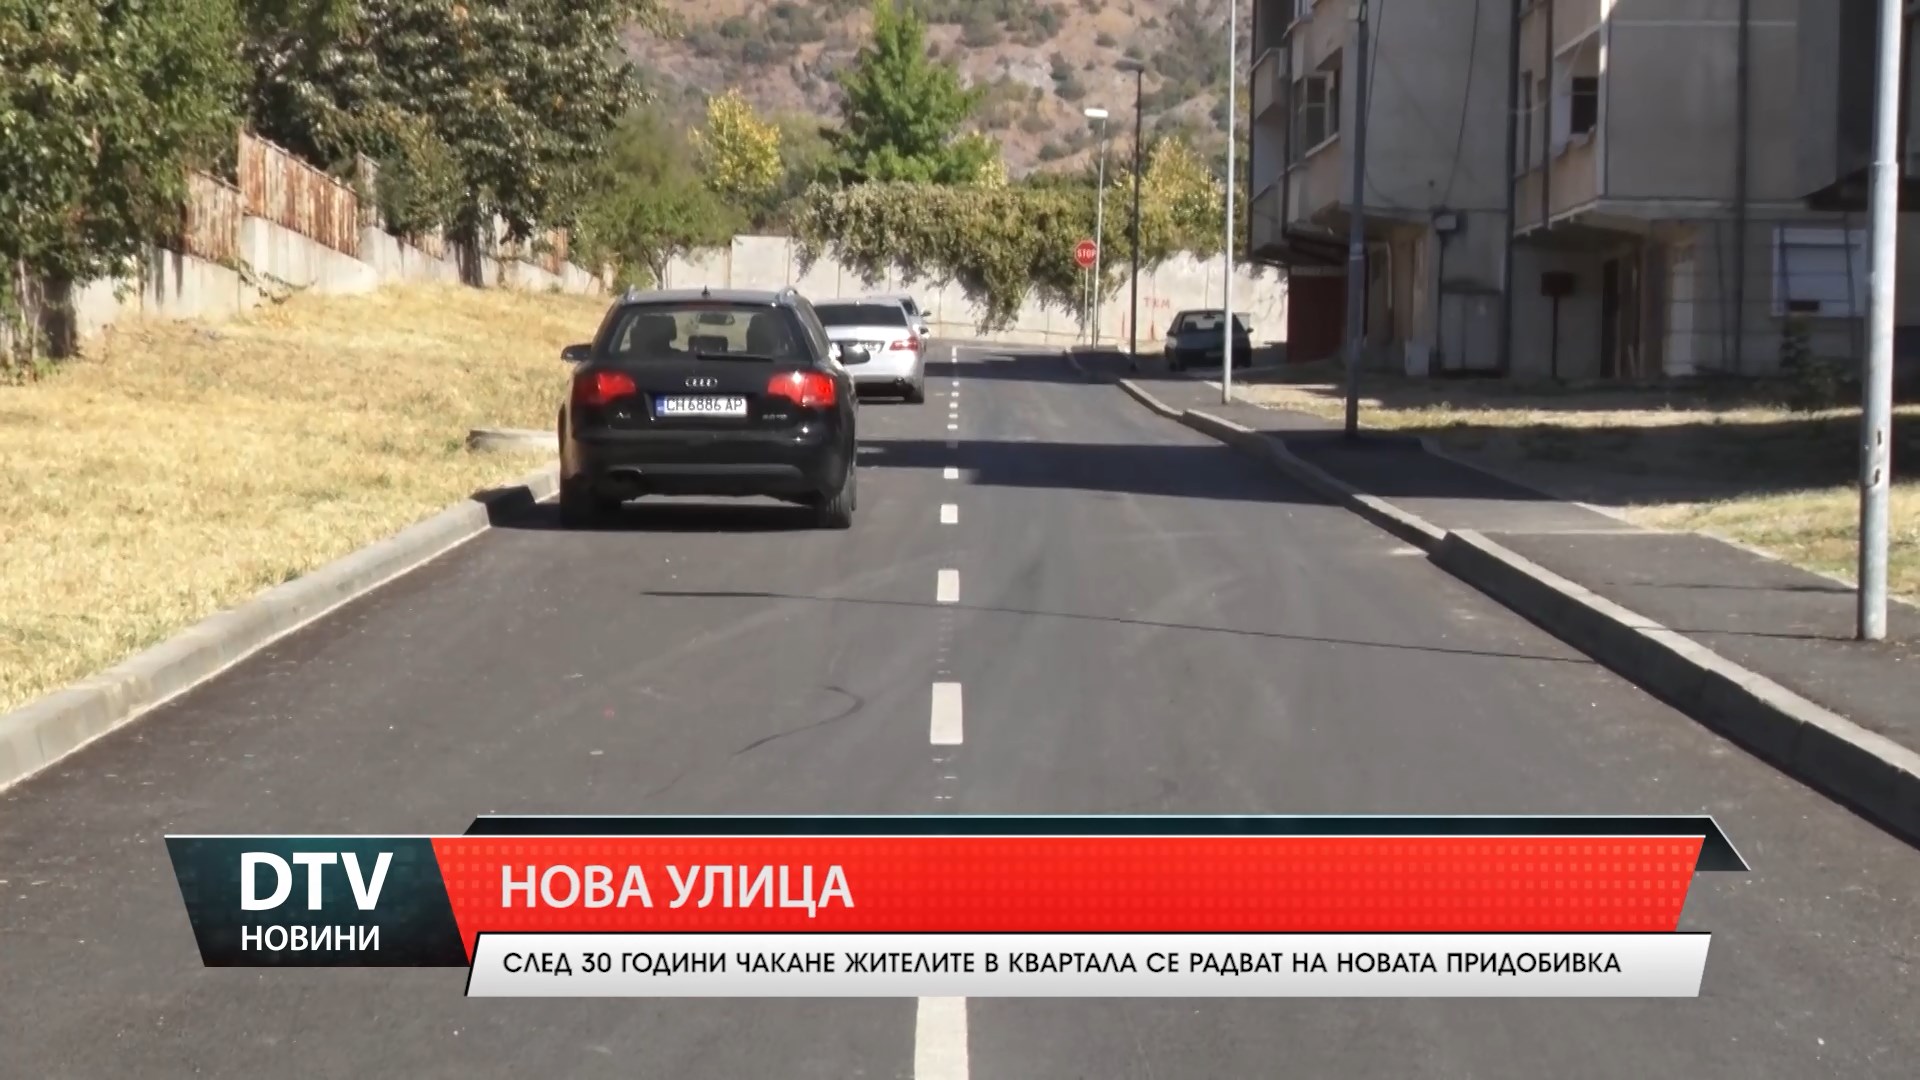 Нова улица в Сливен След 30 години чакане жителите в квартала се радват на новата придобивка